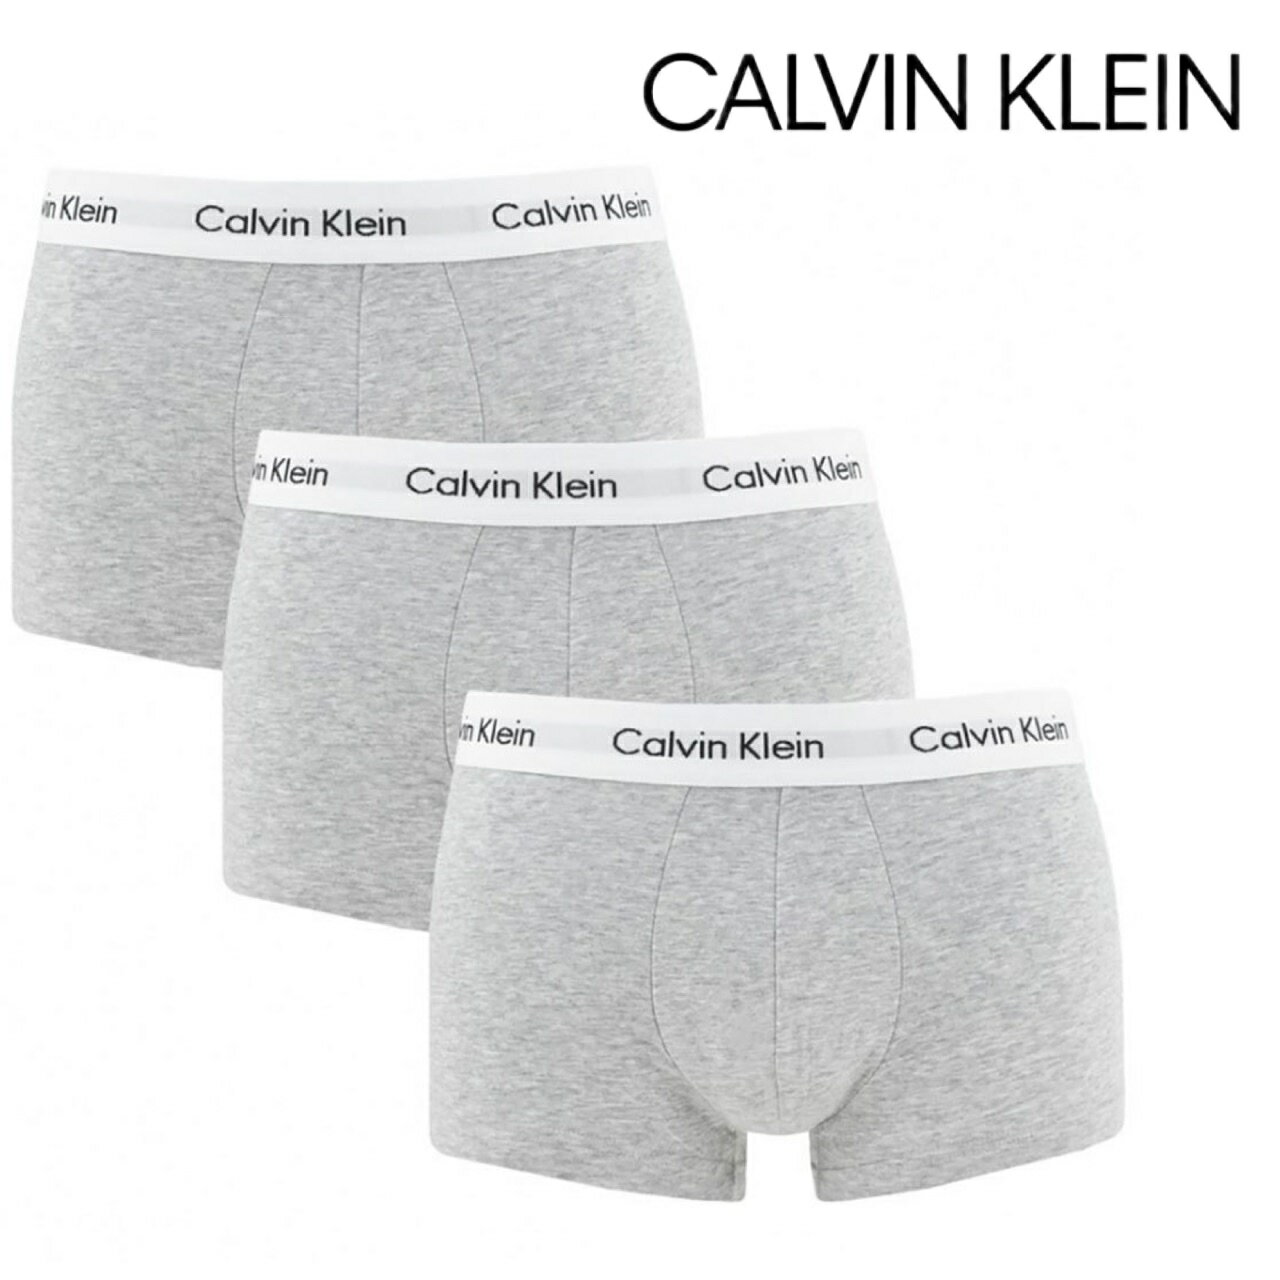 【お得な3枚セット】Calvin Klein カルバンクライン ローライズ Low Rise 3pack ボクサーパンツ トランクス 下着 正規品 おしゃれ プレゼント ギフト